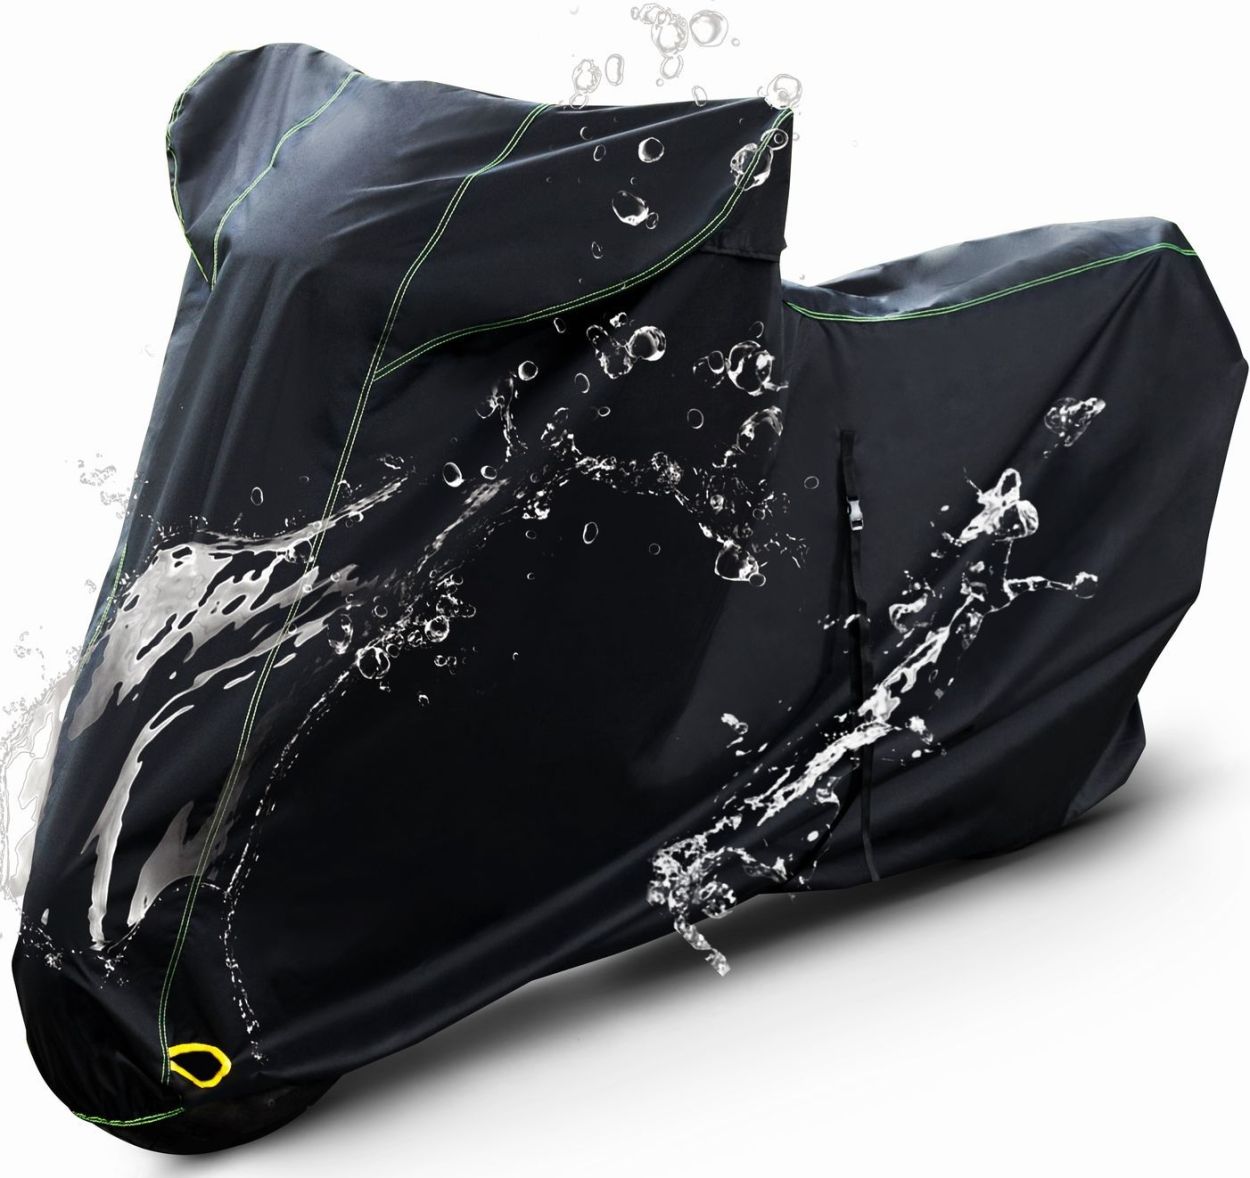 Barrichello(バリチェロ) バイクカバー Mサイズ 高級オックス300Ｄ使用 厚手生地 防水 グロム スーパーカブ [ブラック] [シルバー]